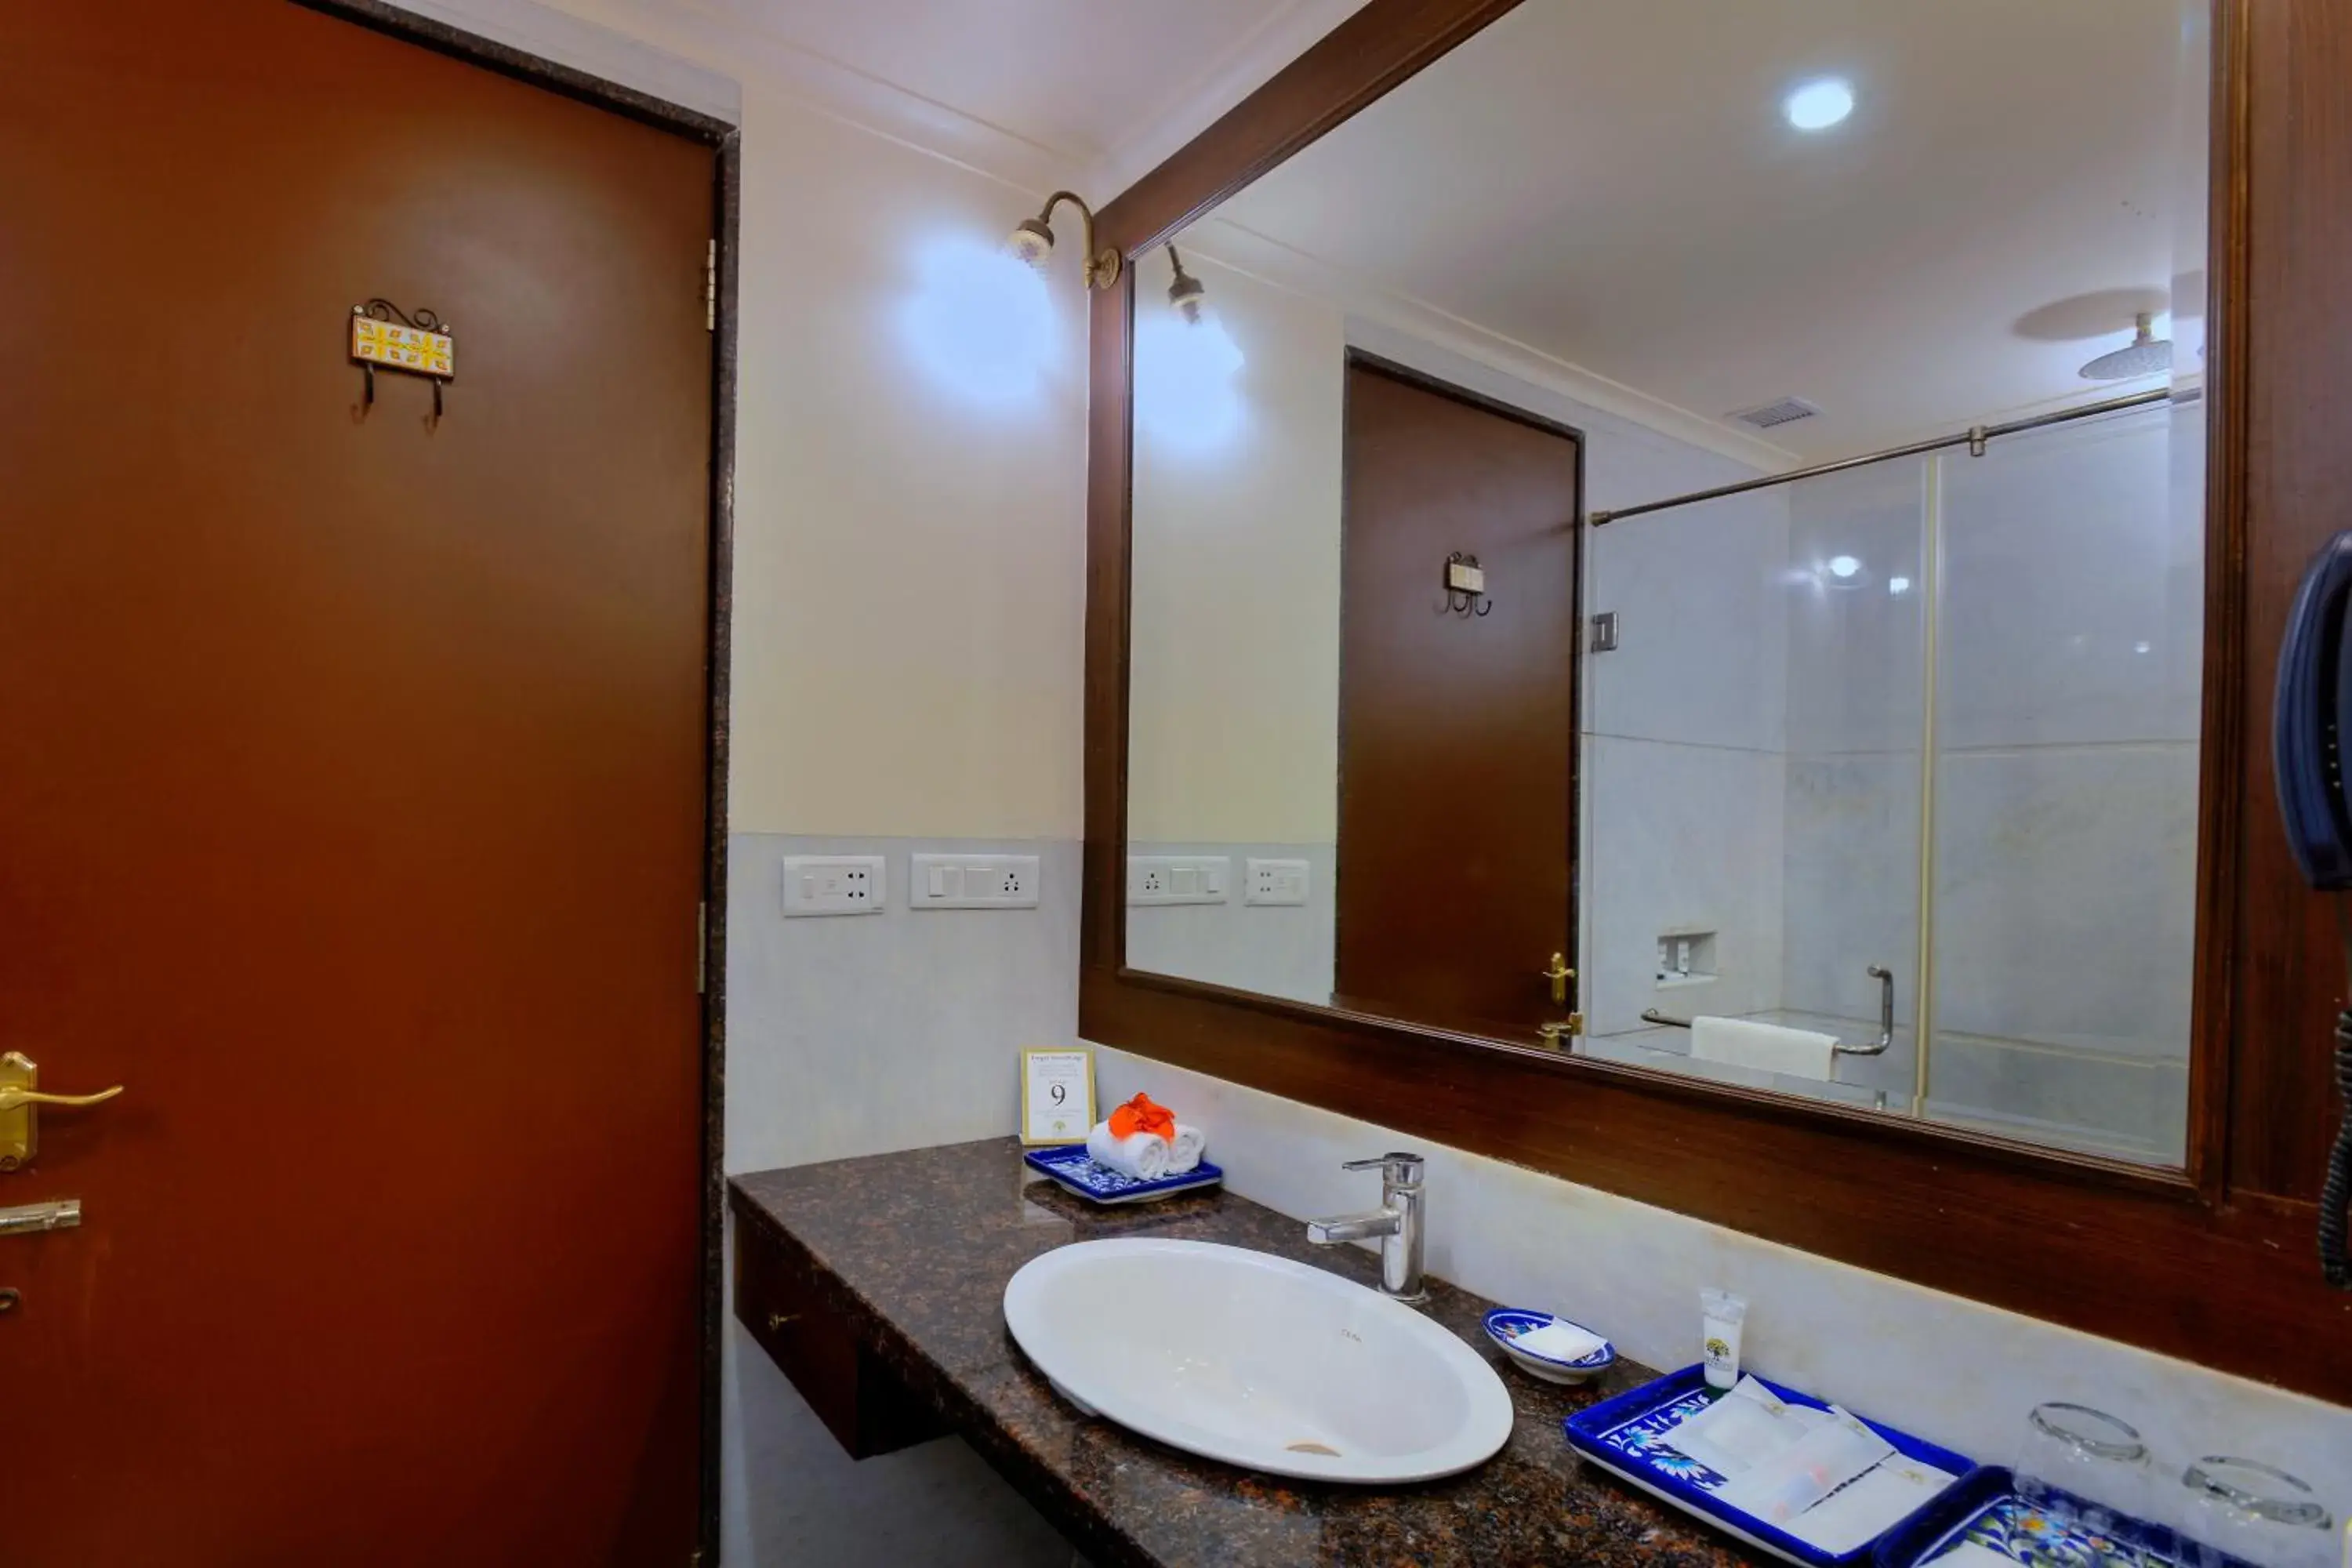 Bathroom in Anuraga Palace